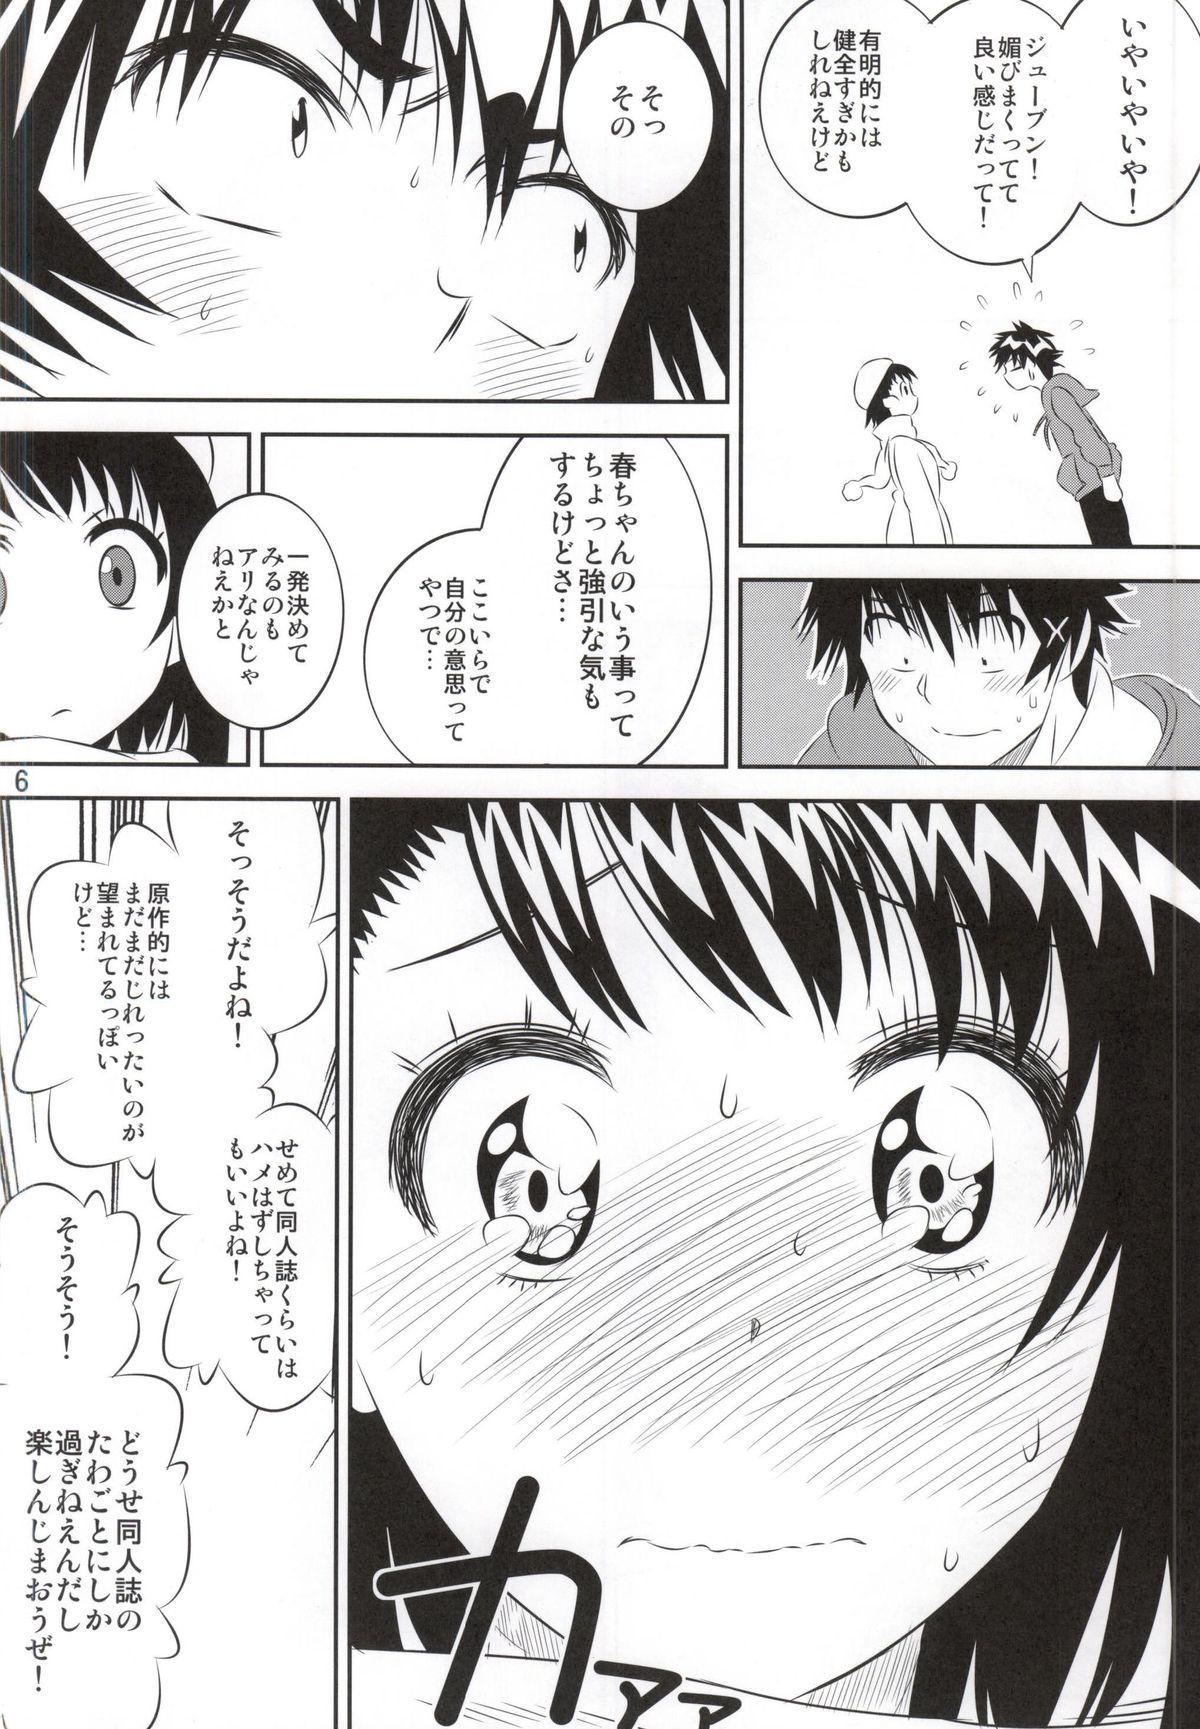 Chilena Kosaki-chan no Yuuutsu 4 - Nisekoi Prima - Page 5